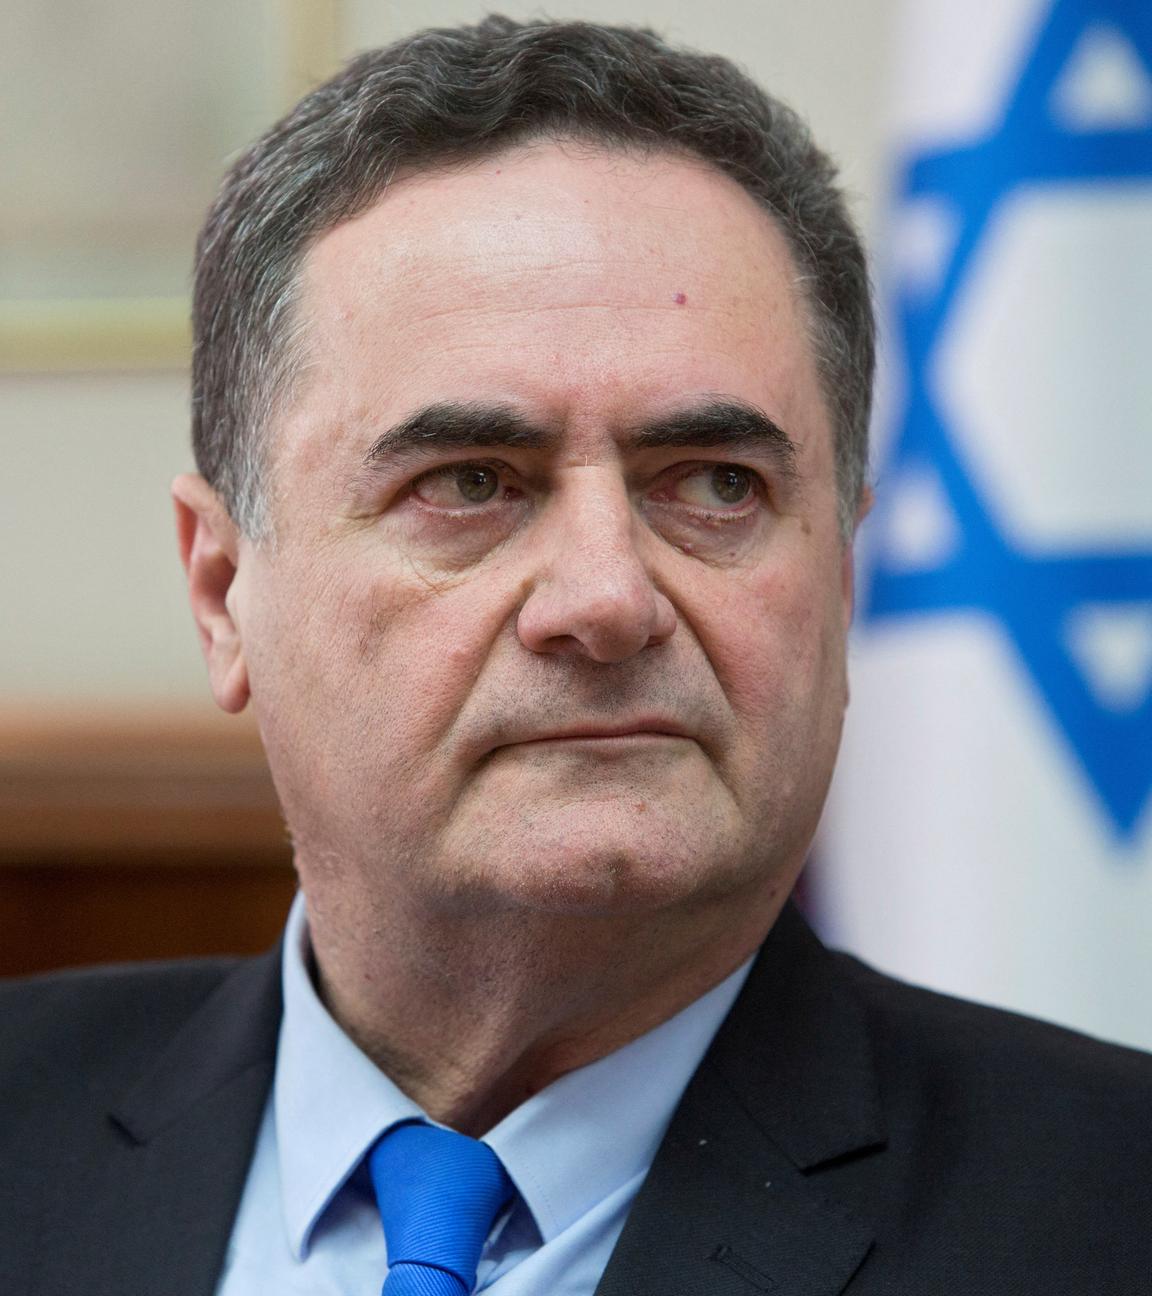 Archiv, 17.02.2019: Der israelische Außenminister Israel Katz bei einer Kabinettssitzung in Jerusalem.